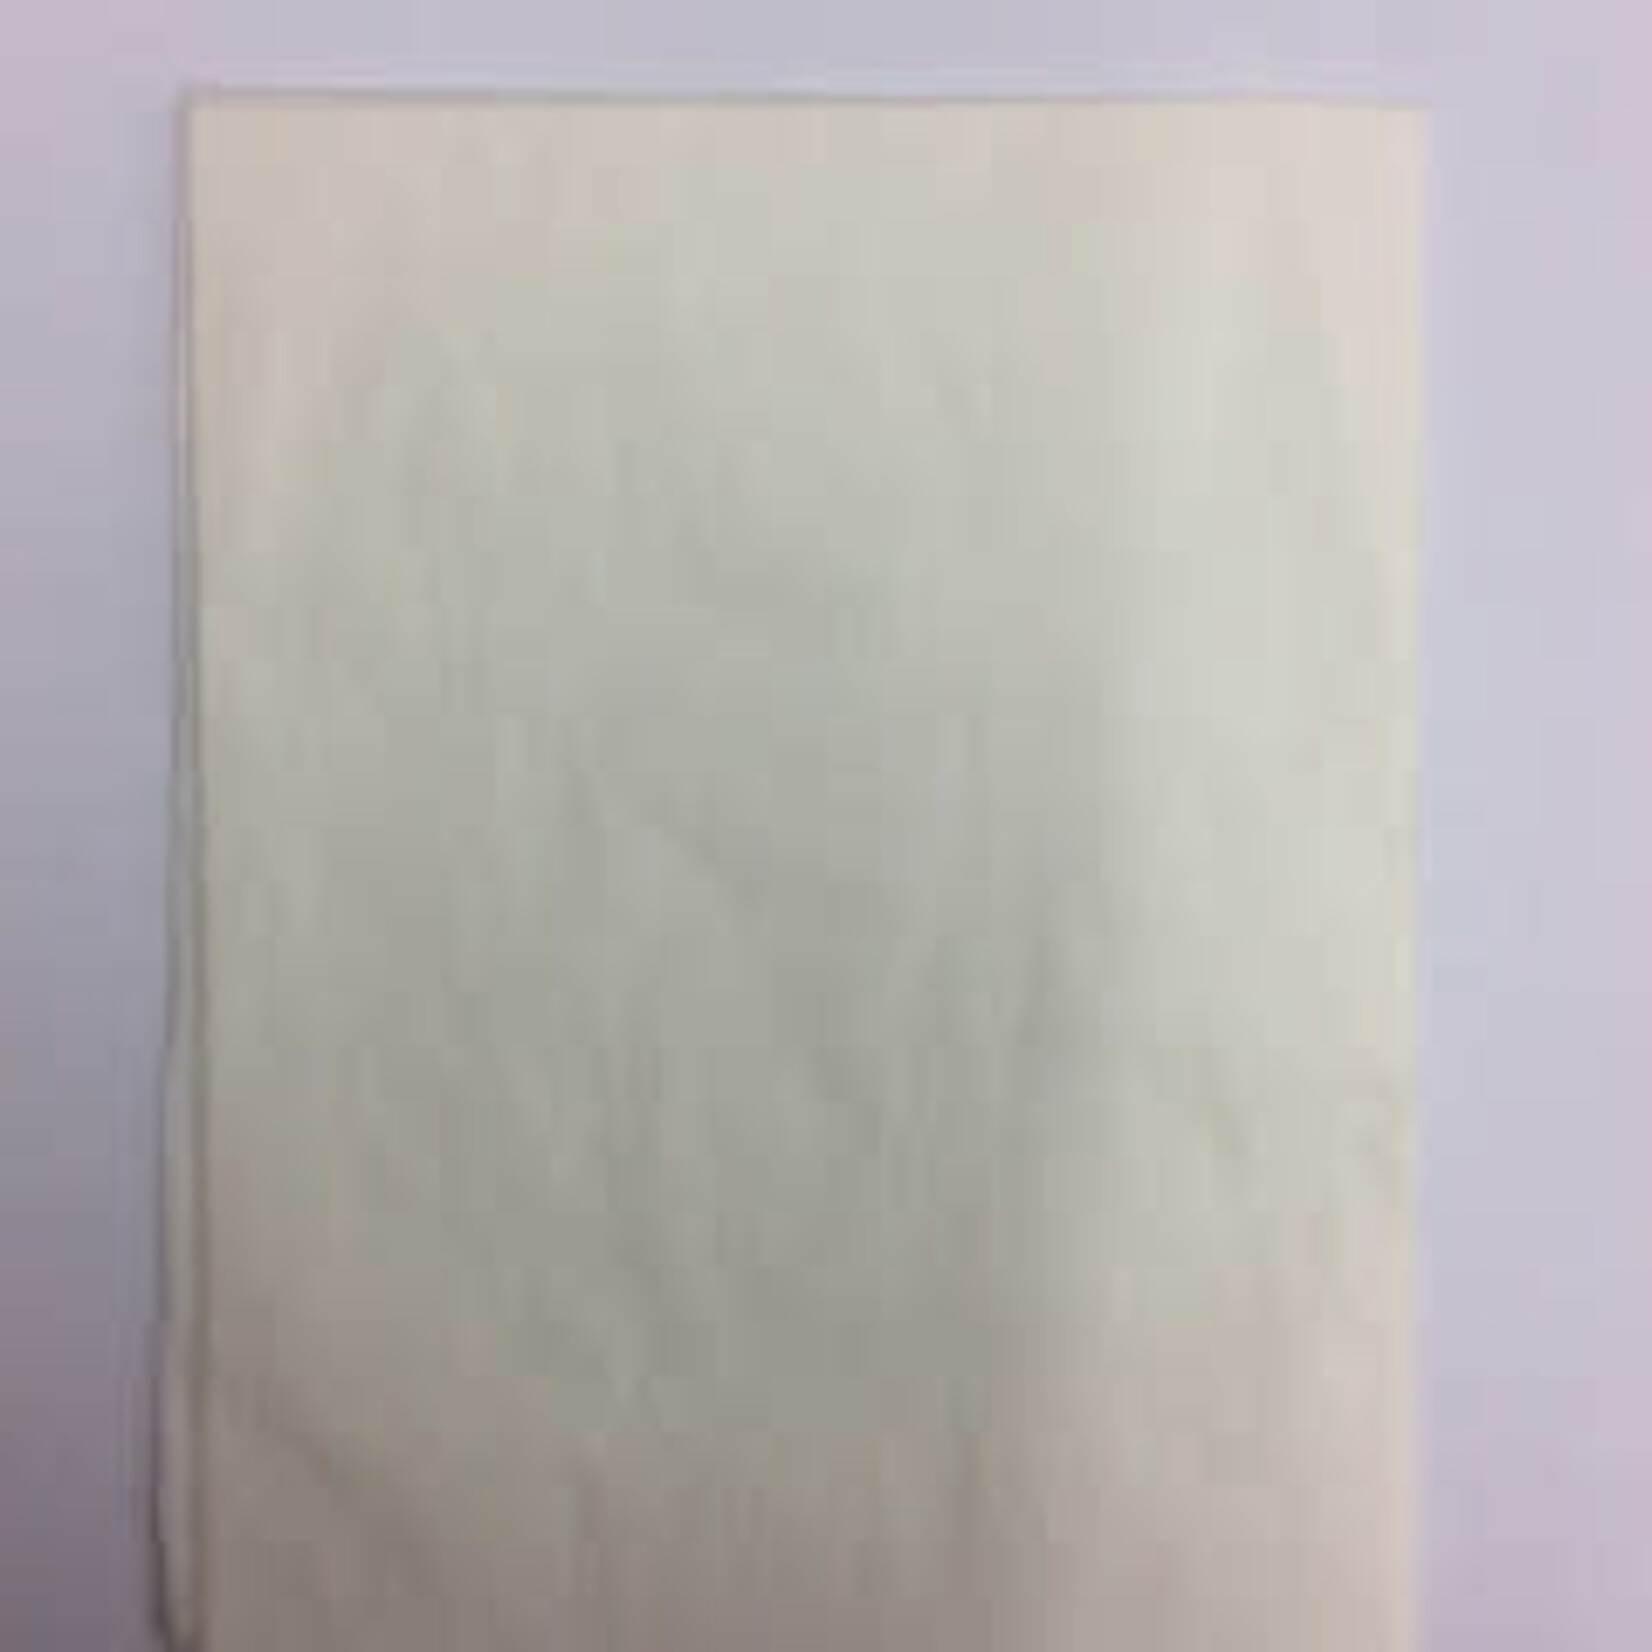 Kite Paper Quire (24pcs) White